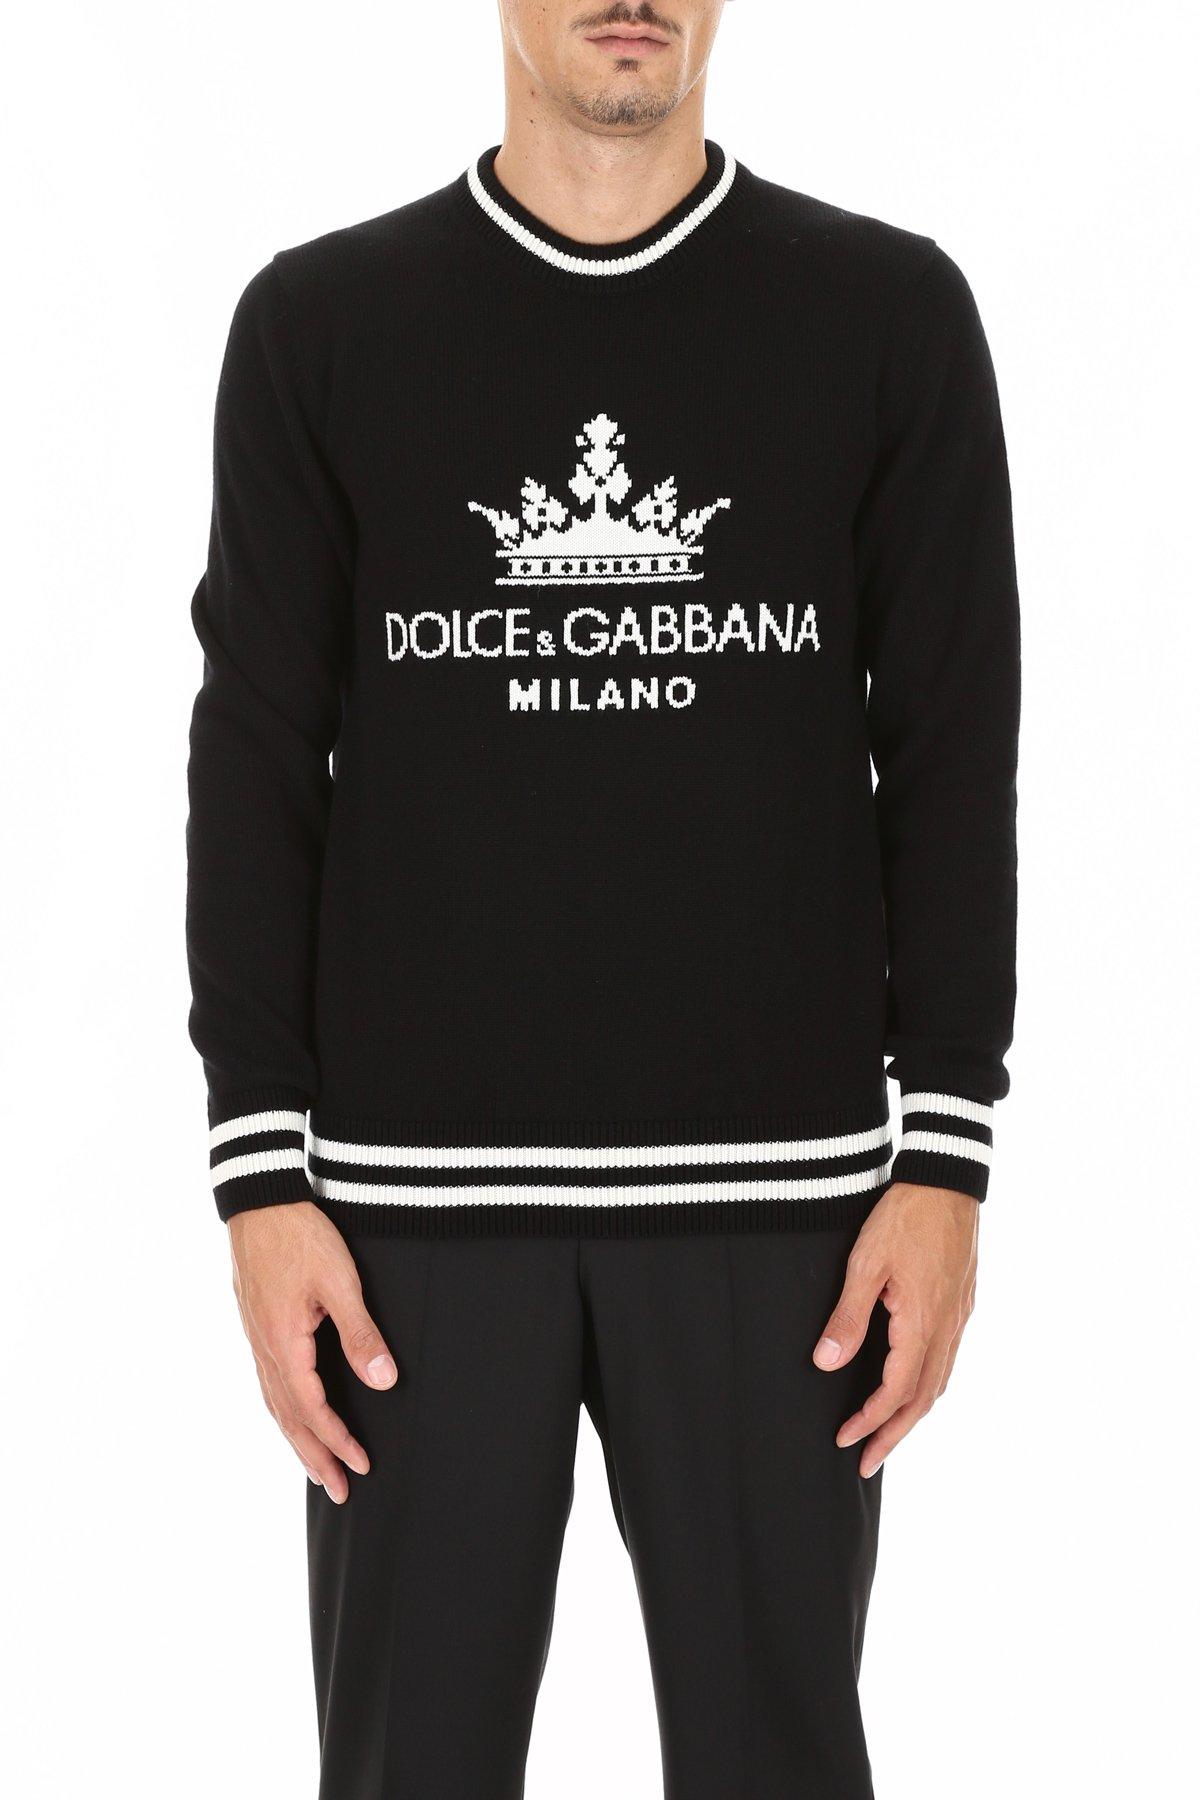 Dolce & Gabbana Dg Milano Pullover in Black,White (Black) for Men | Lyst